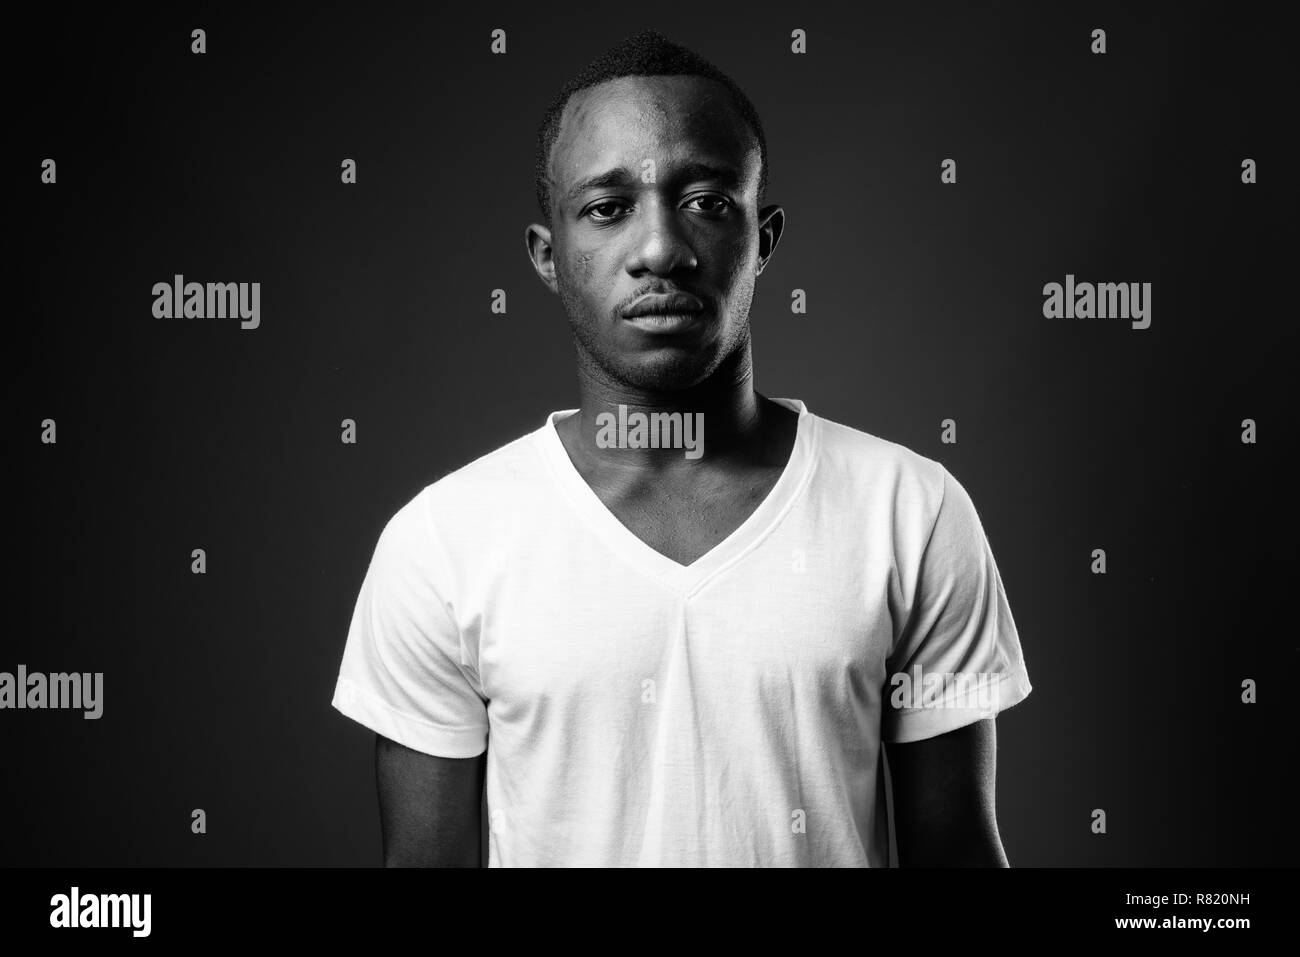 Junge afrikanische Menschen gegen den schwarzen Hintergrund in Schwarz und Weiß Stockfoto